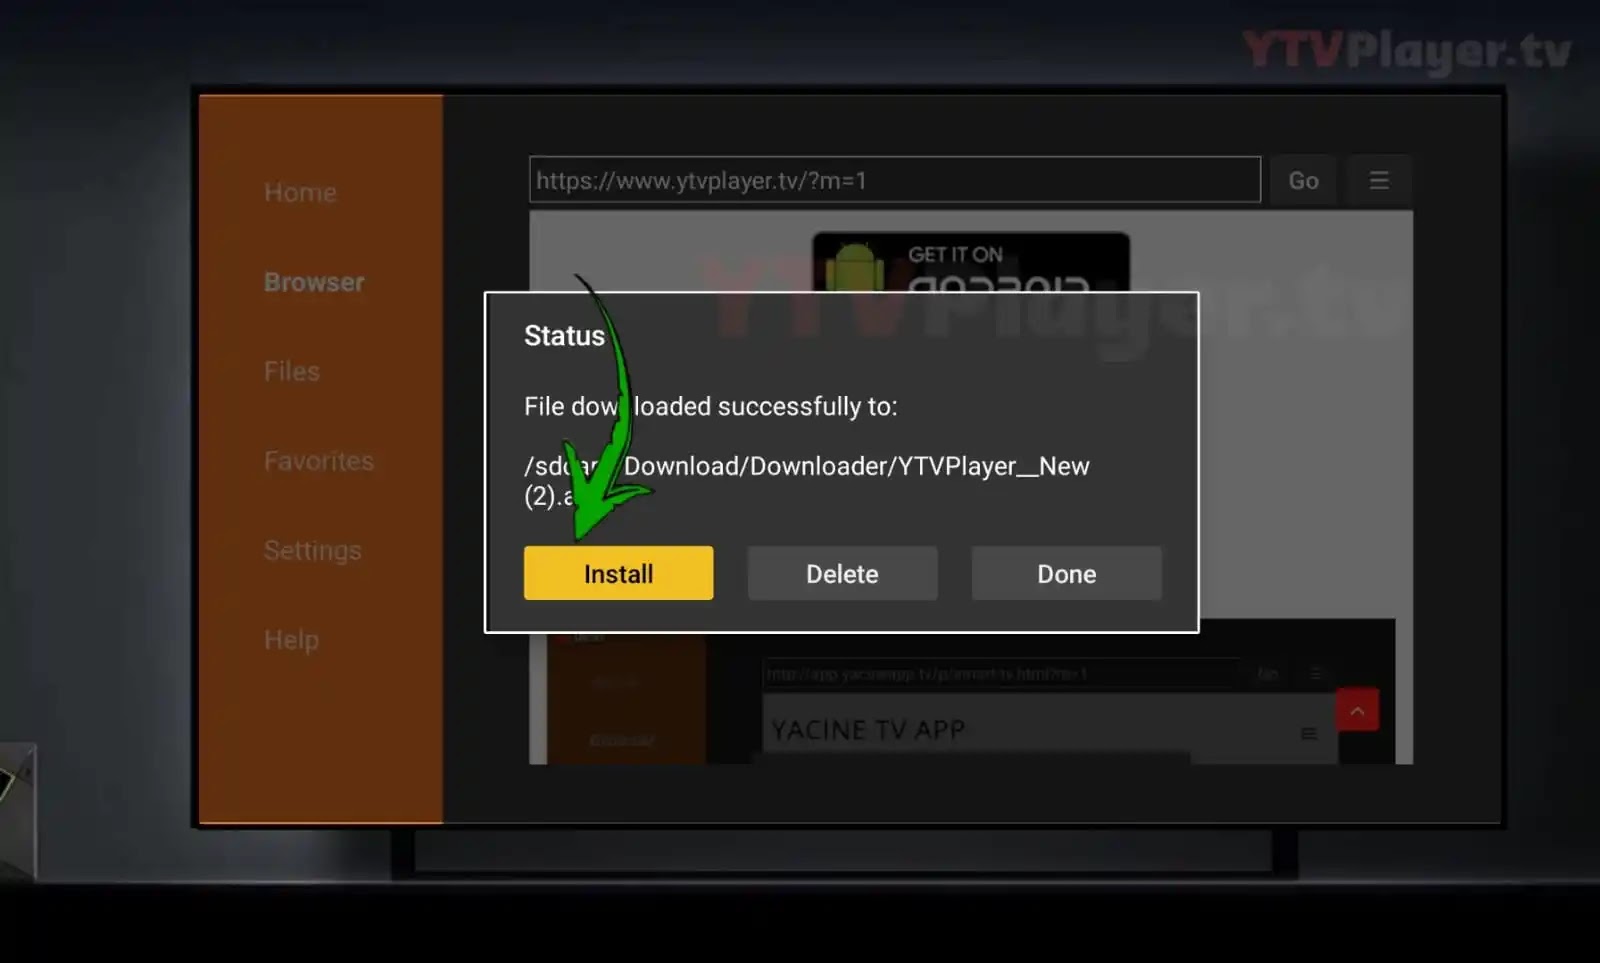 طريقة تحميل YTV Player للتلفاز (Android Tv / Tv box) اخر تحديث